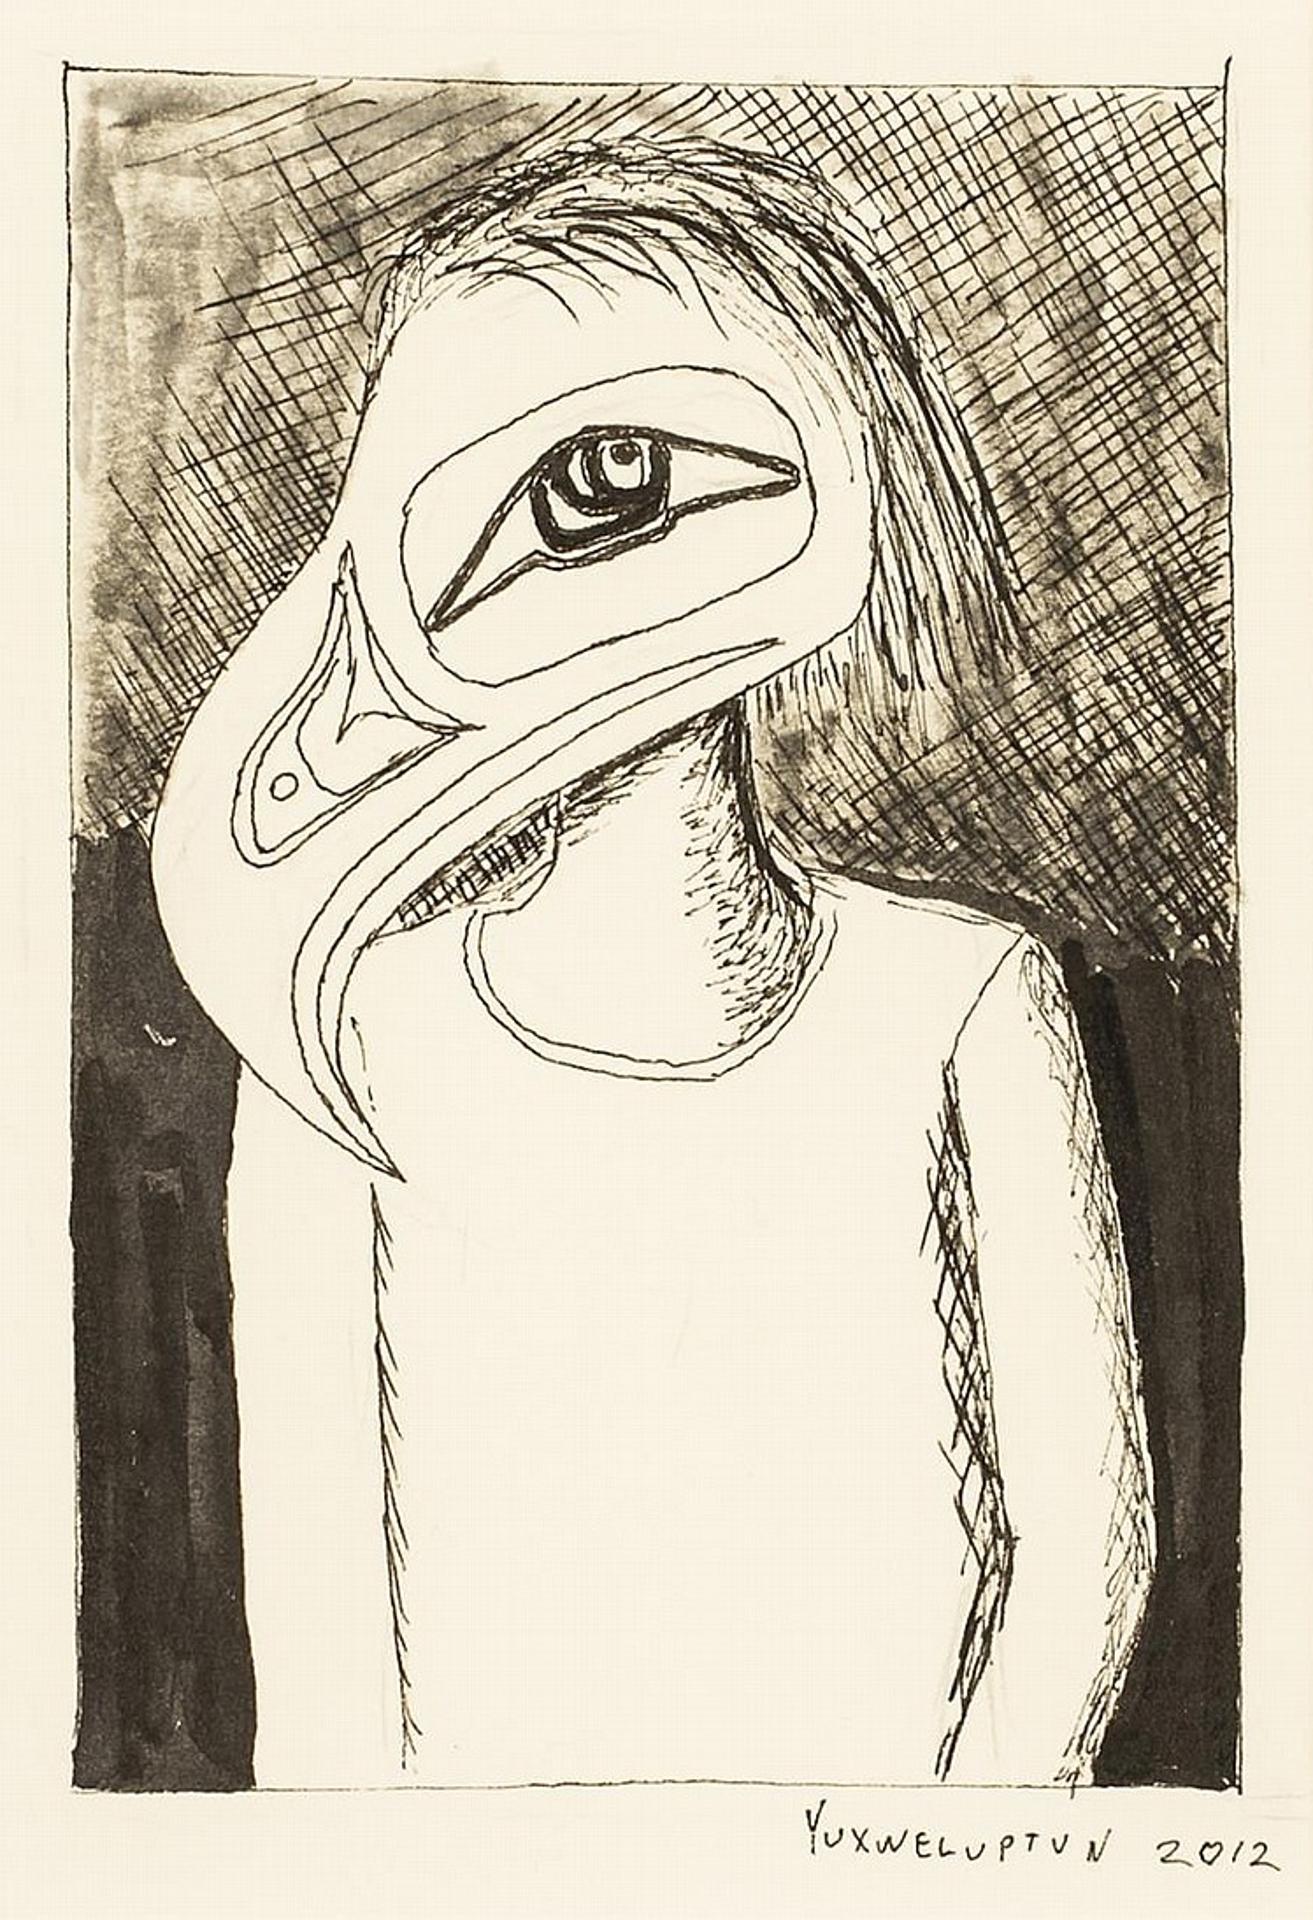 Lawrence Paul Yuxweluptun (1957) - Untitled - Figure in crewneck shirt